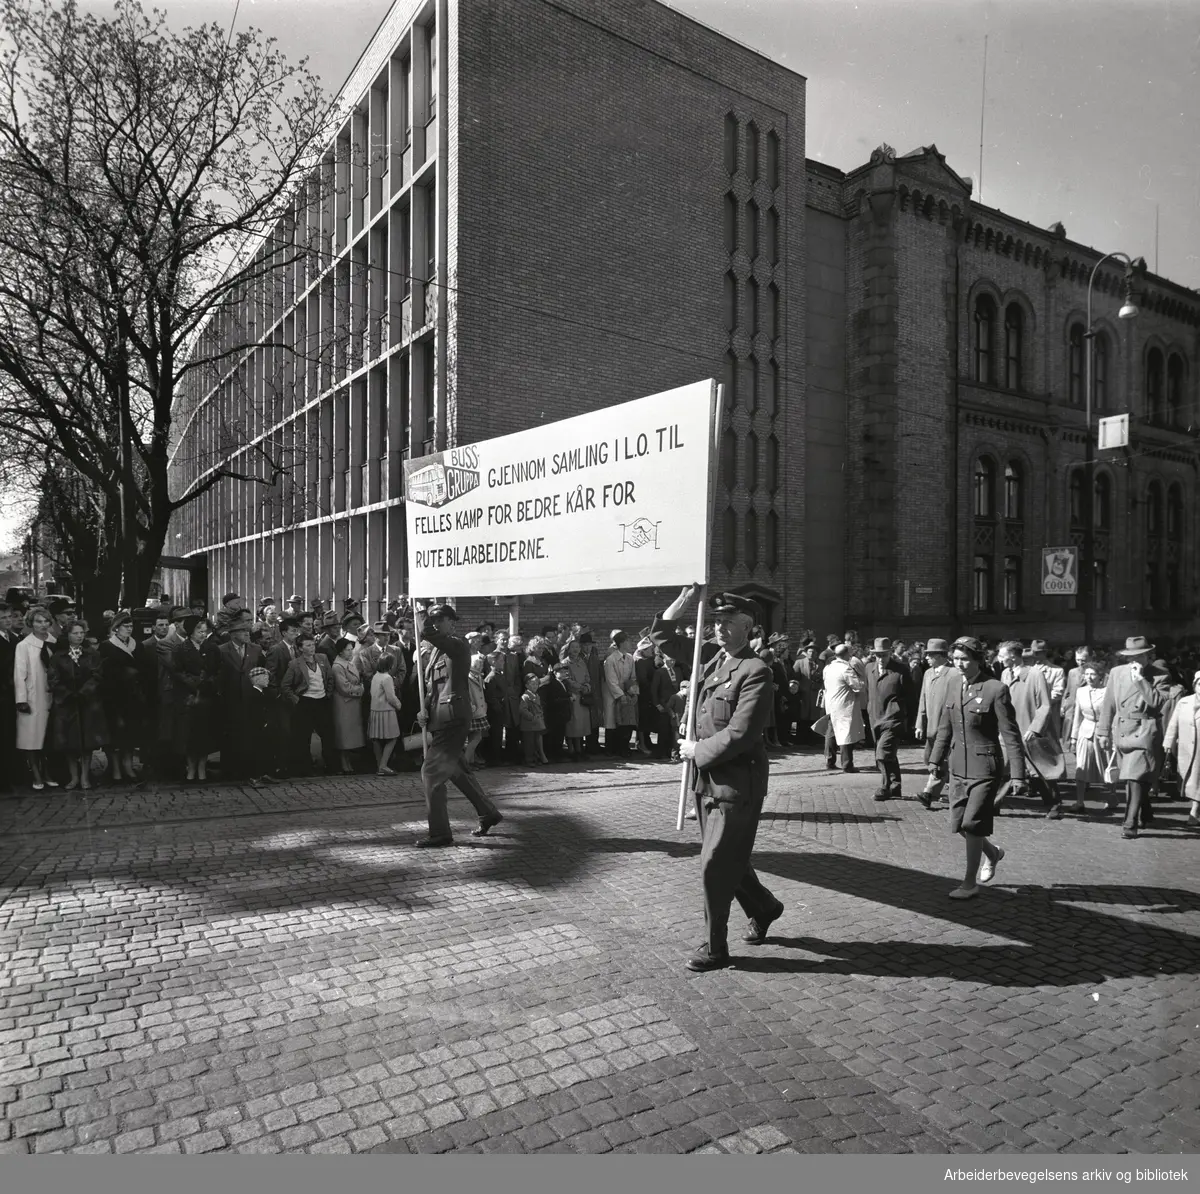 1. mai 1960 i Oslo.Karl Johans gate..Demonstrasjonstoget..Transparent: Gjennom samling i LO til felles kamp for bedre kår for rutebilarbeiderne..